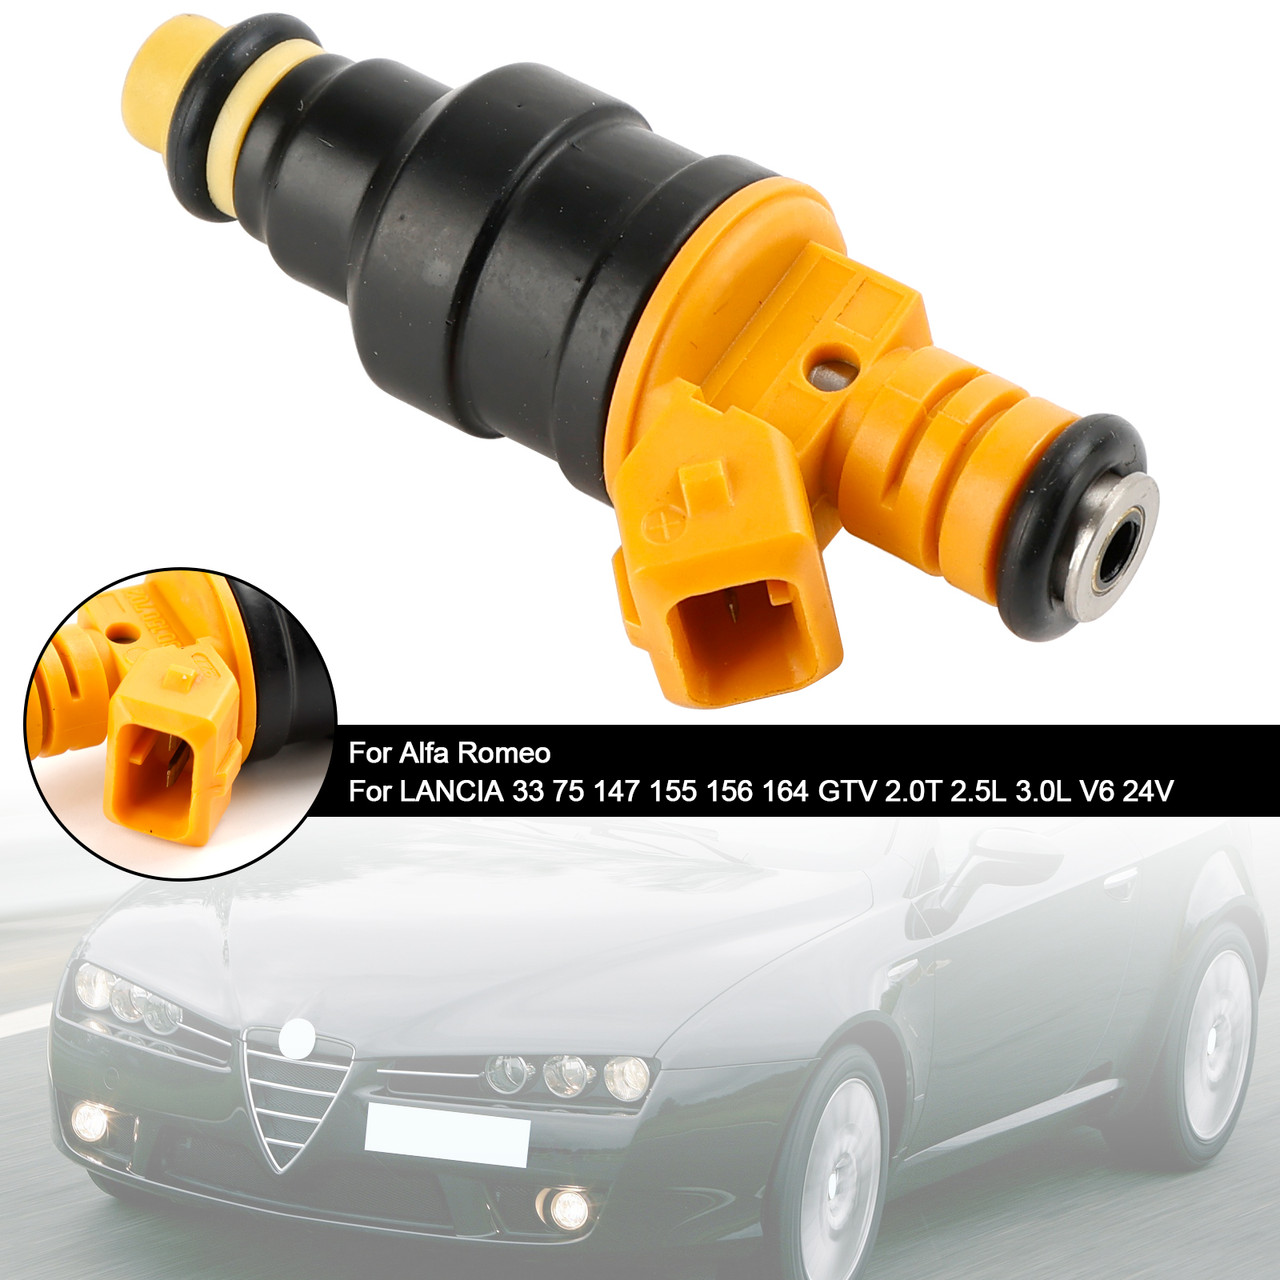 1PCS Fuel Injector 0280150702 Fit Alfa Romeo Fit LANCIA 147 155 156 164 2.0T